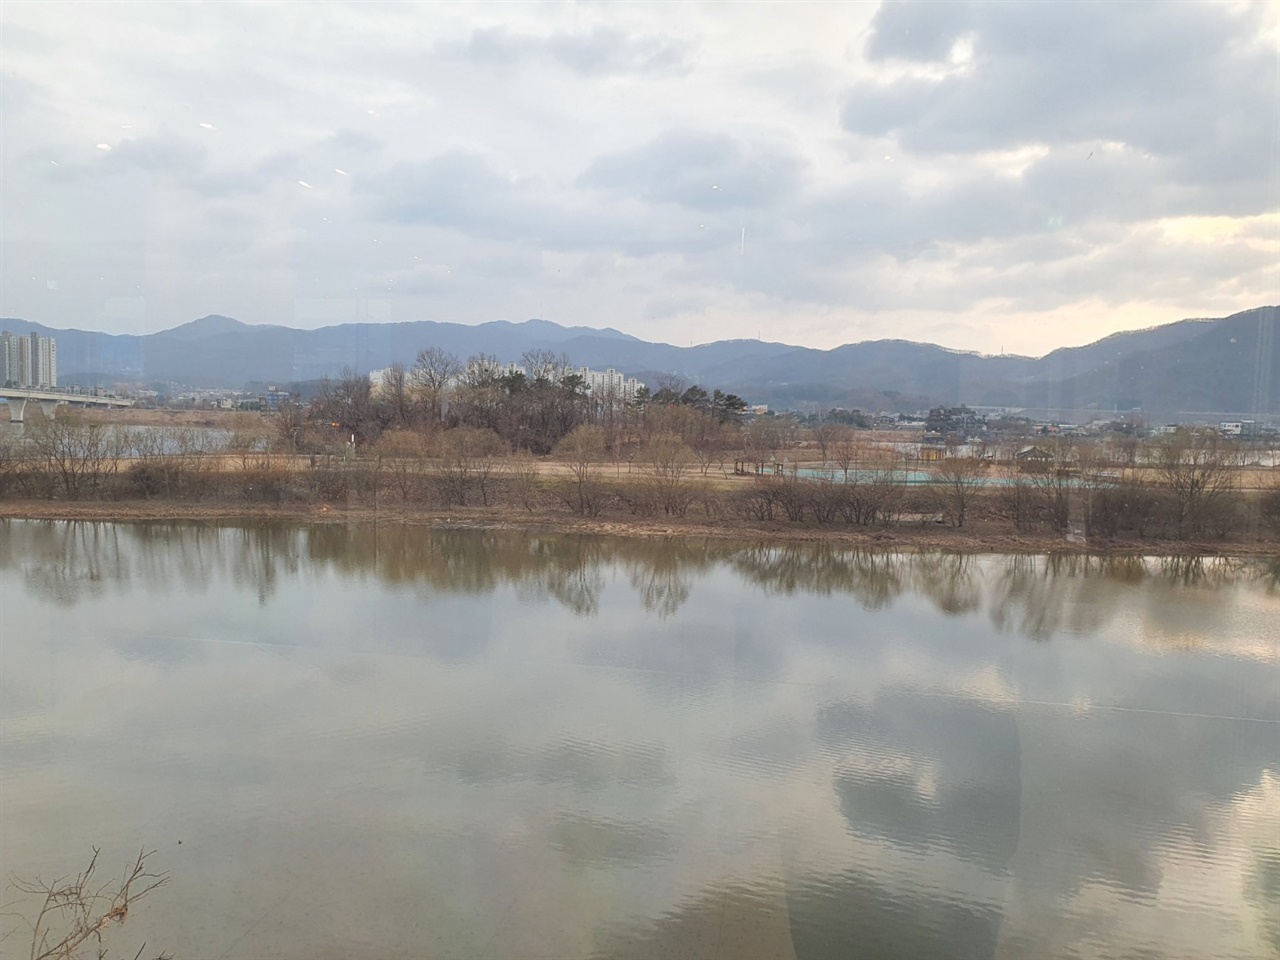 가평 부근에서 지나는 북한강과 양평의 남한강은 같은 강이지만 만들어가는 풍경이 조금씩 다르다. 양평 부근에서 보는 남한강은 정적이면서 잔잔한 피아노소나타를 듣는듯하다.